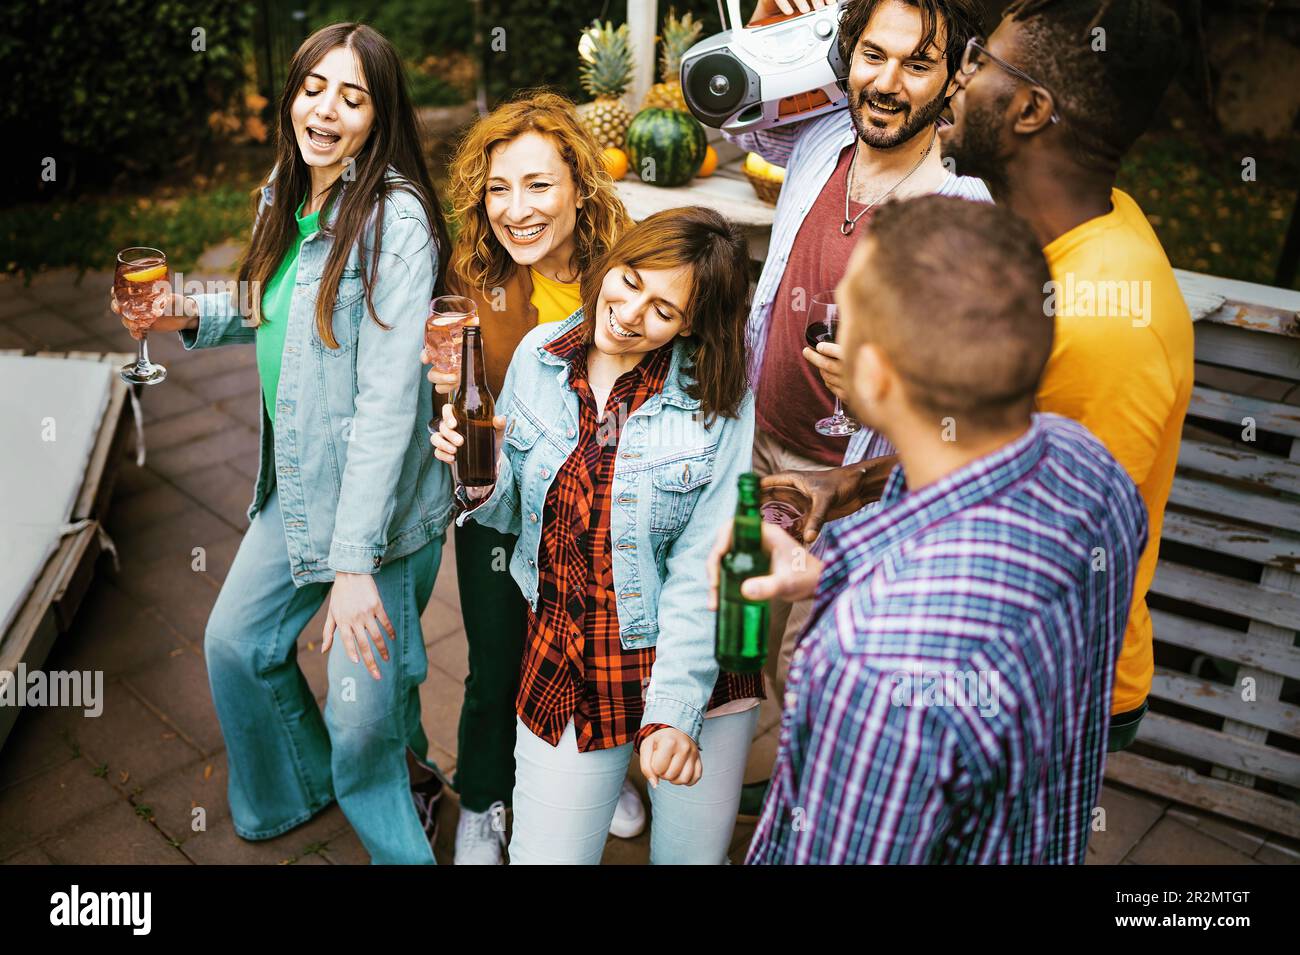 Eine vielfältige Gruppe von Freunden, darunter drei Männer und drei Frauen, von denen eine Afrikanerin ist, genießen alkoholische Getränke (Bier, Cocktails, Wein) und lachen Stockfoto